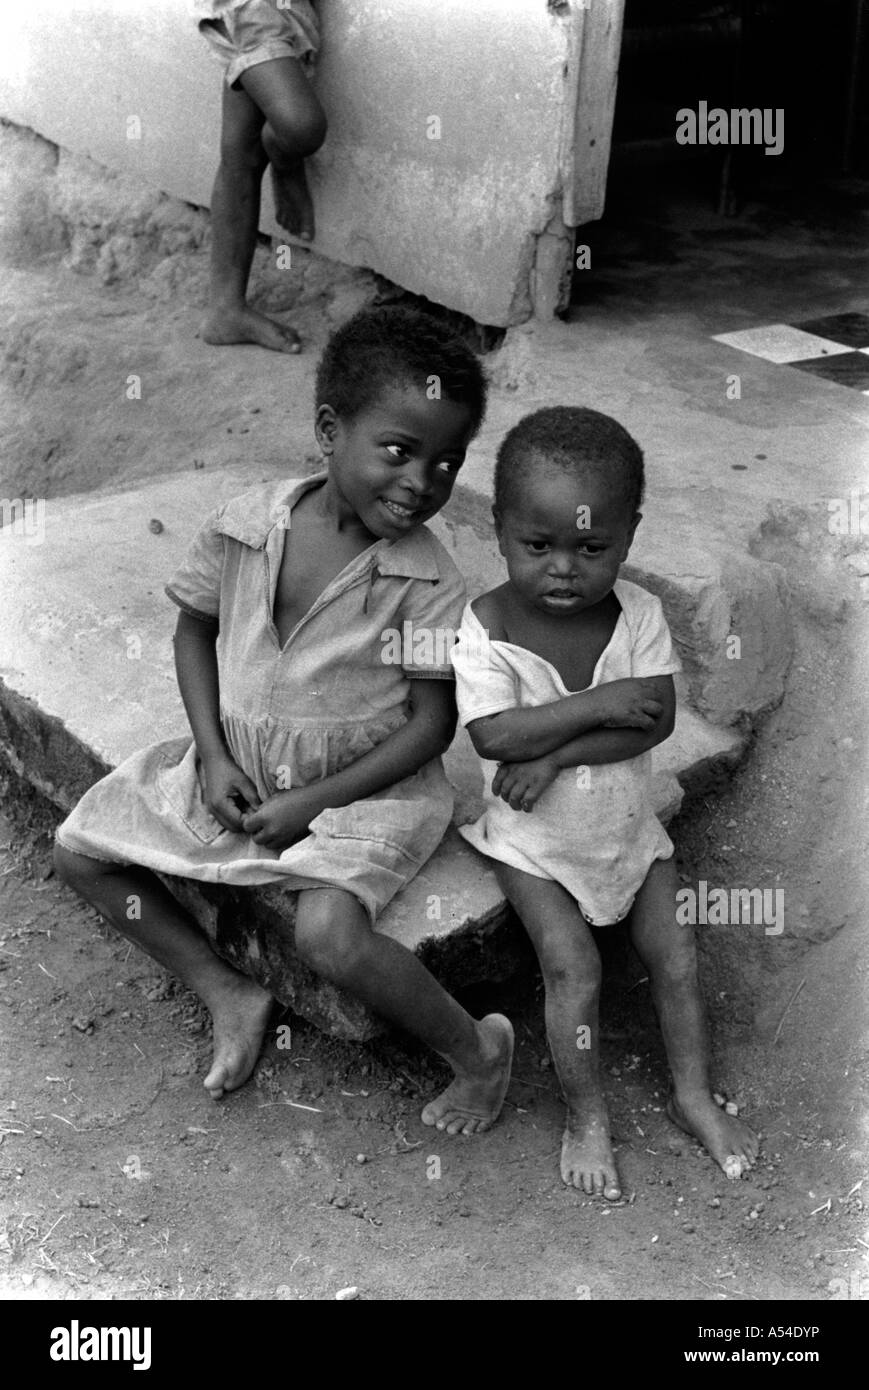 Painet hn1961 551 in bianco e nero bambini niefang Guinea equatoriale paese nazione in via di sviluppo meno sviluppati dal punto di vista economico Foto Stock